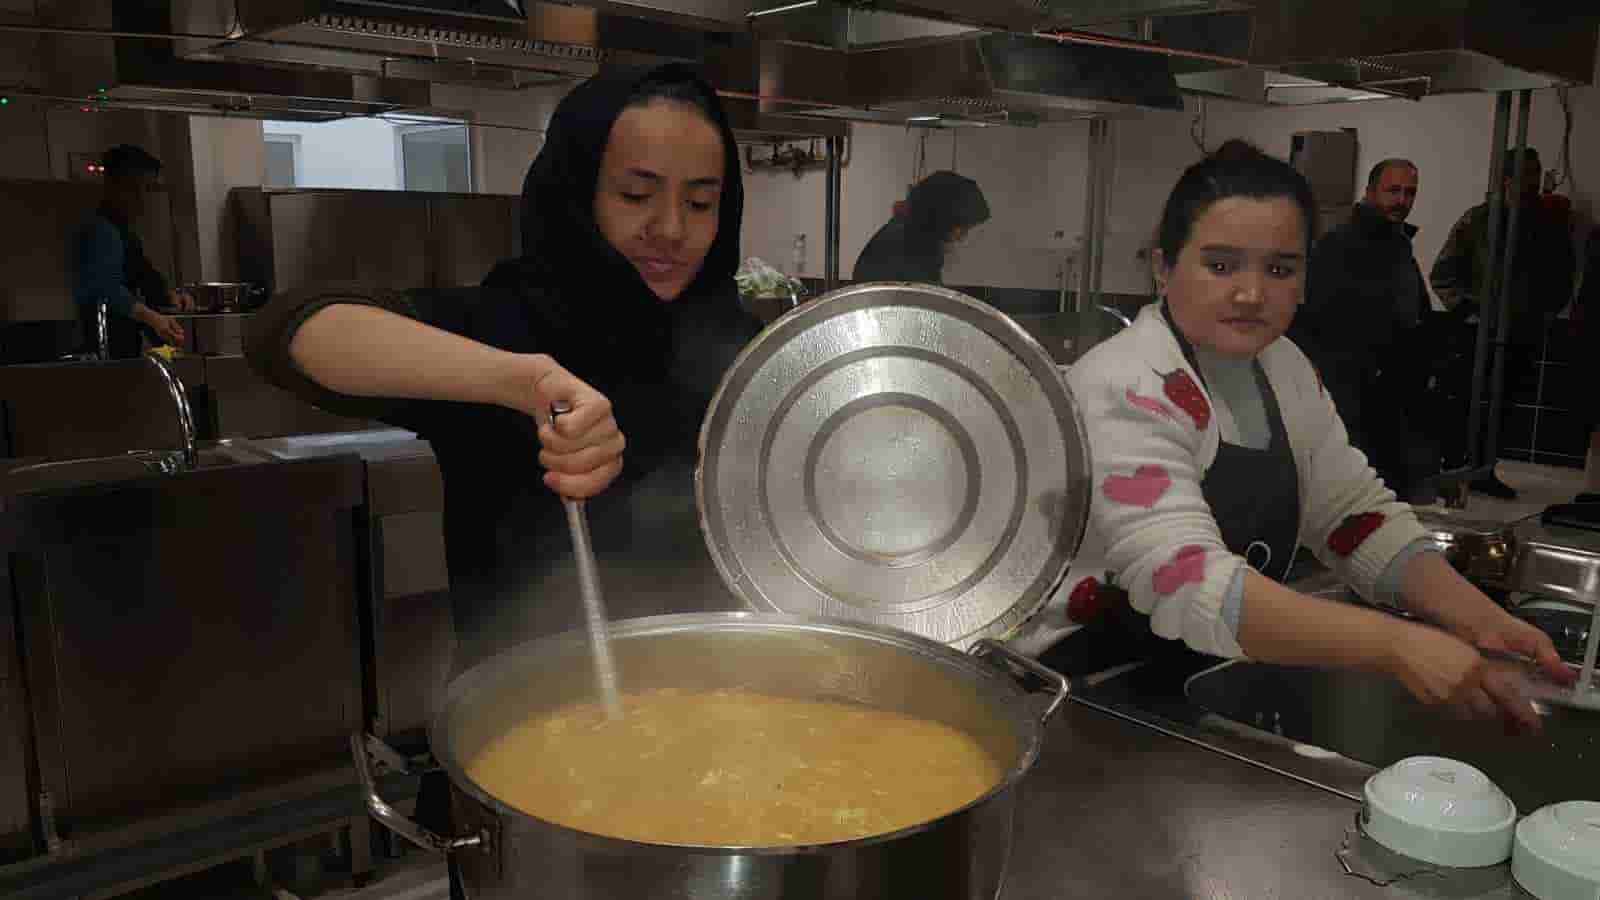 Mültecilere yurt dışında çalışma imkanı sağlayacak ’Aşçılık Kursu’ tamamlandı